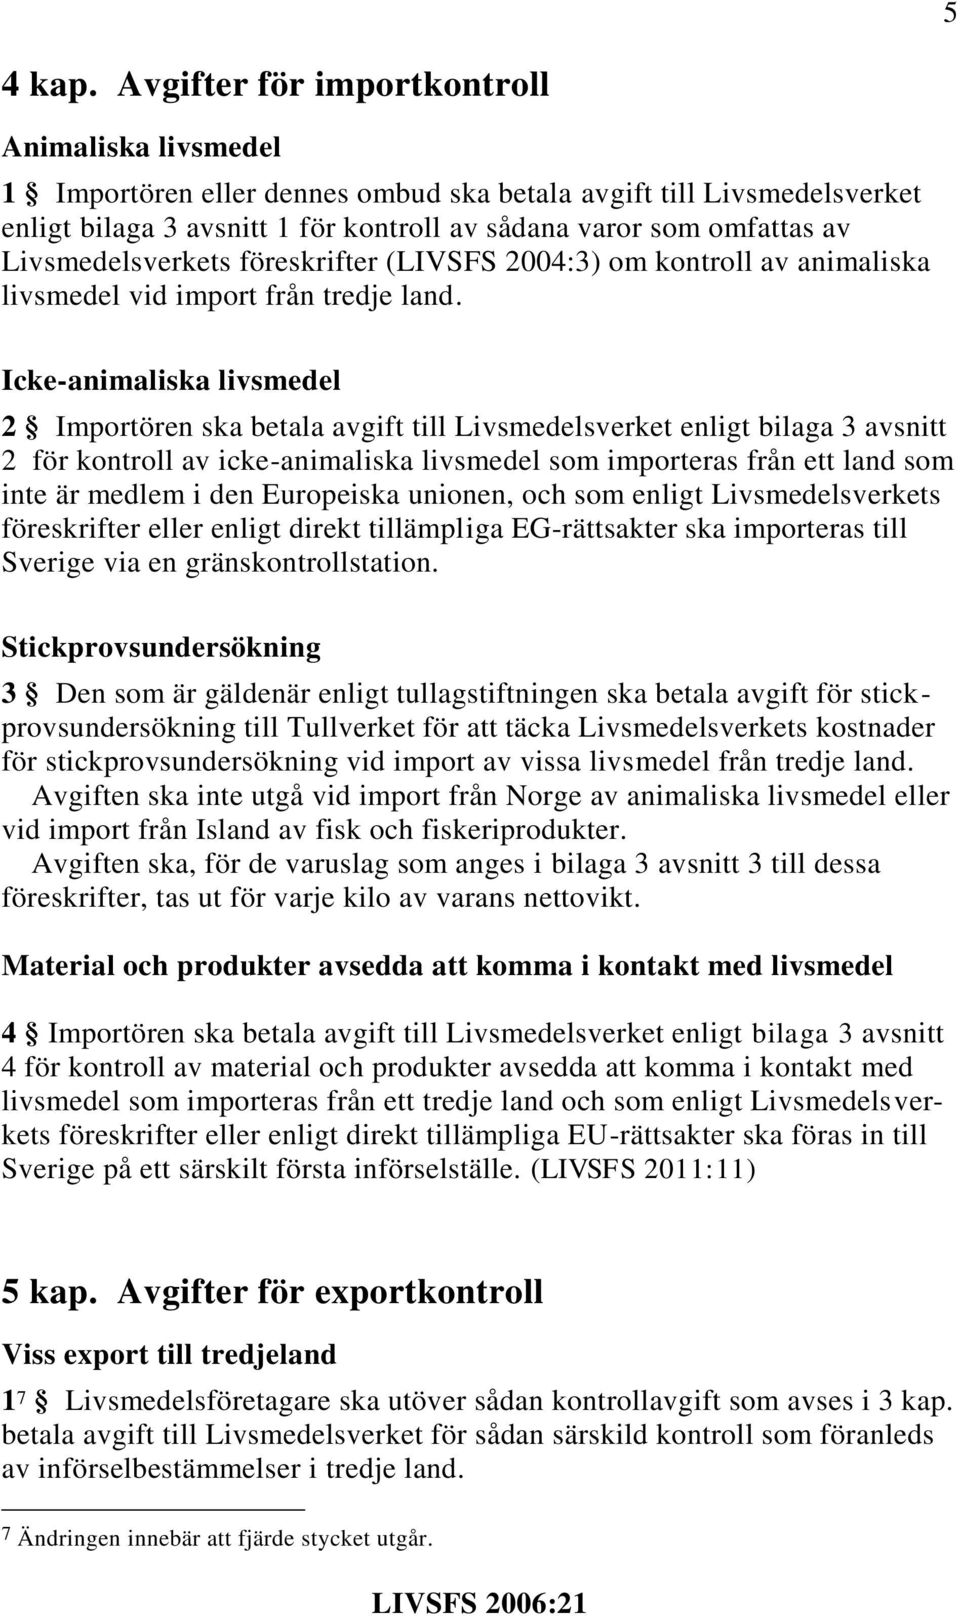 Livsmedelsverkets föreskrifter (LIVSFS 2004:3) om kontroll av animaliska livsmedel vid import från tredje land.